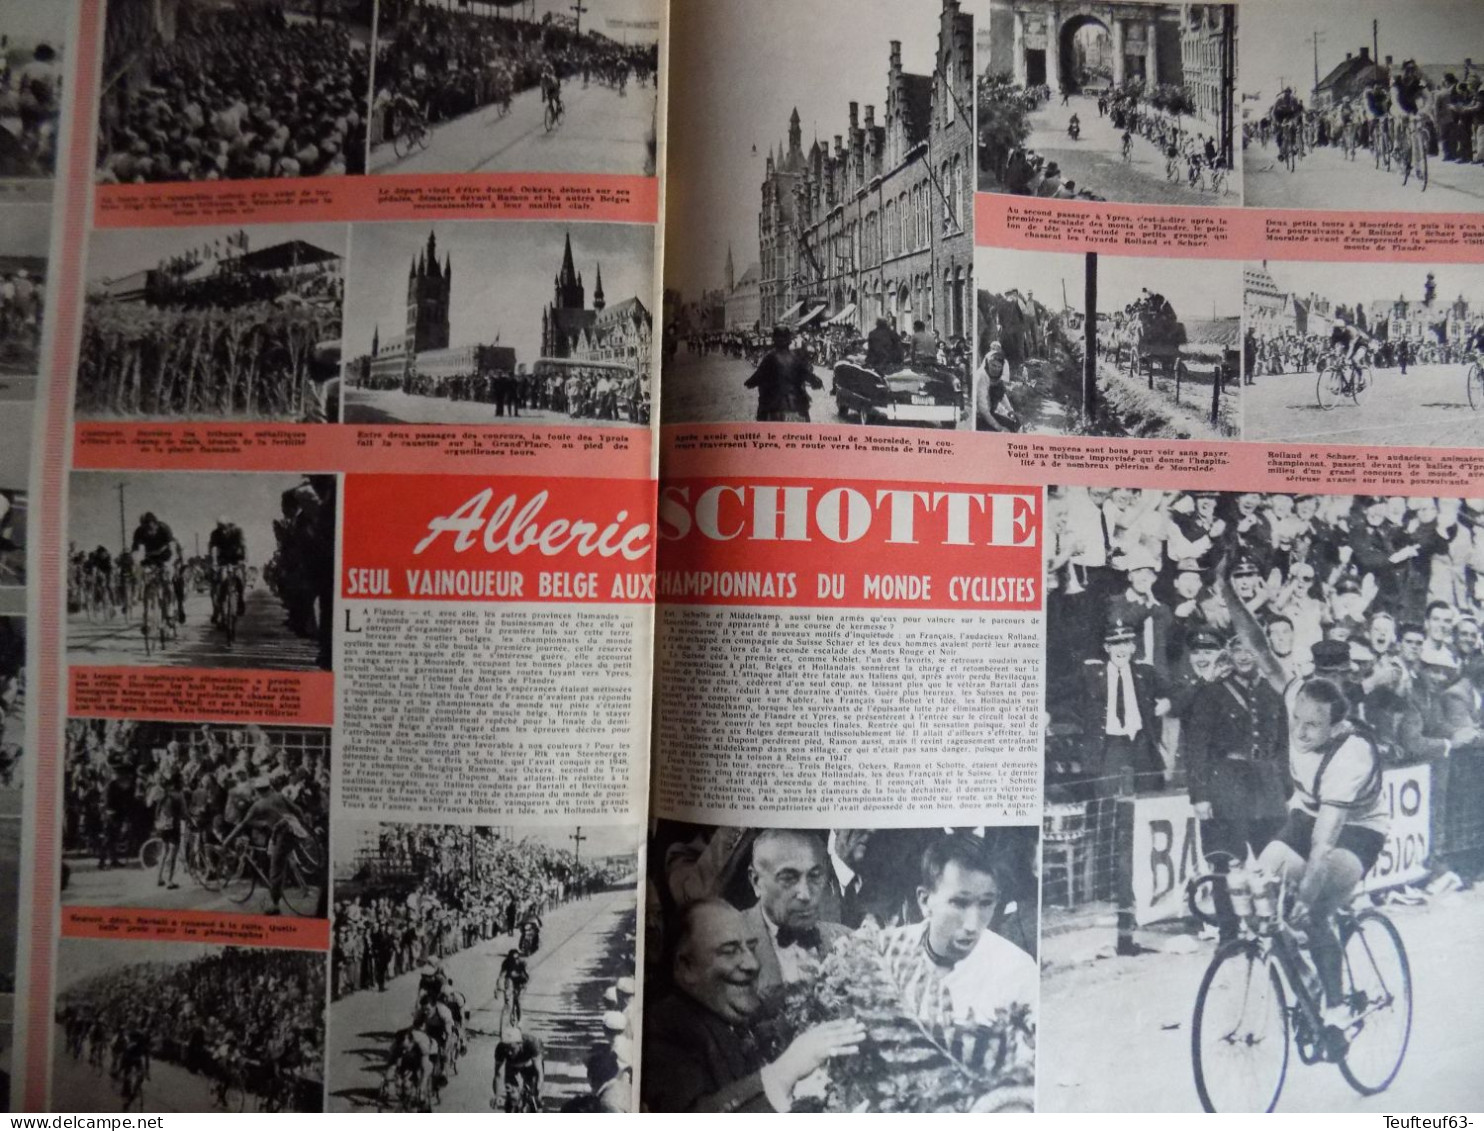 Le Soir Illustré N° 948 Mariage Au Luxembourg - Richard Todd - Cyclisme Alberic Schotte - Docteur Chenevée Homme-triton - General Issues